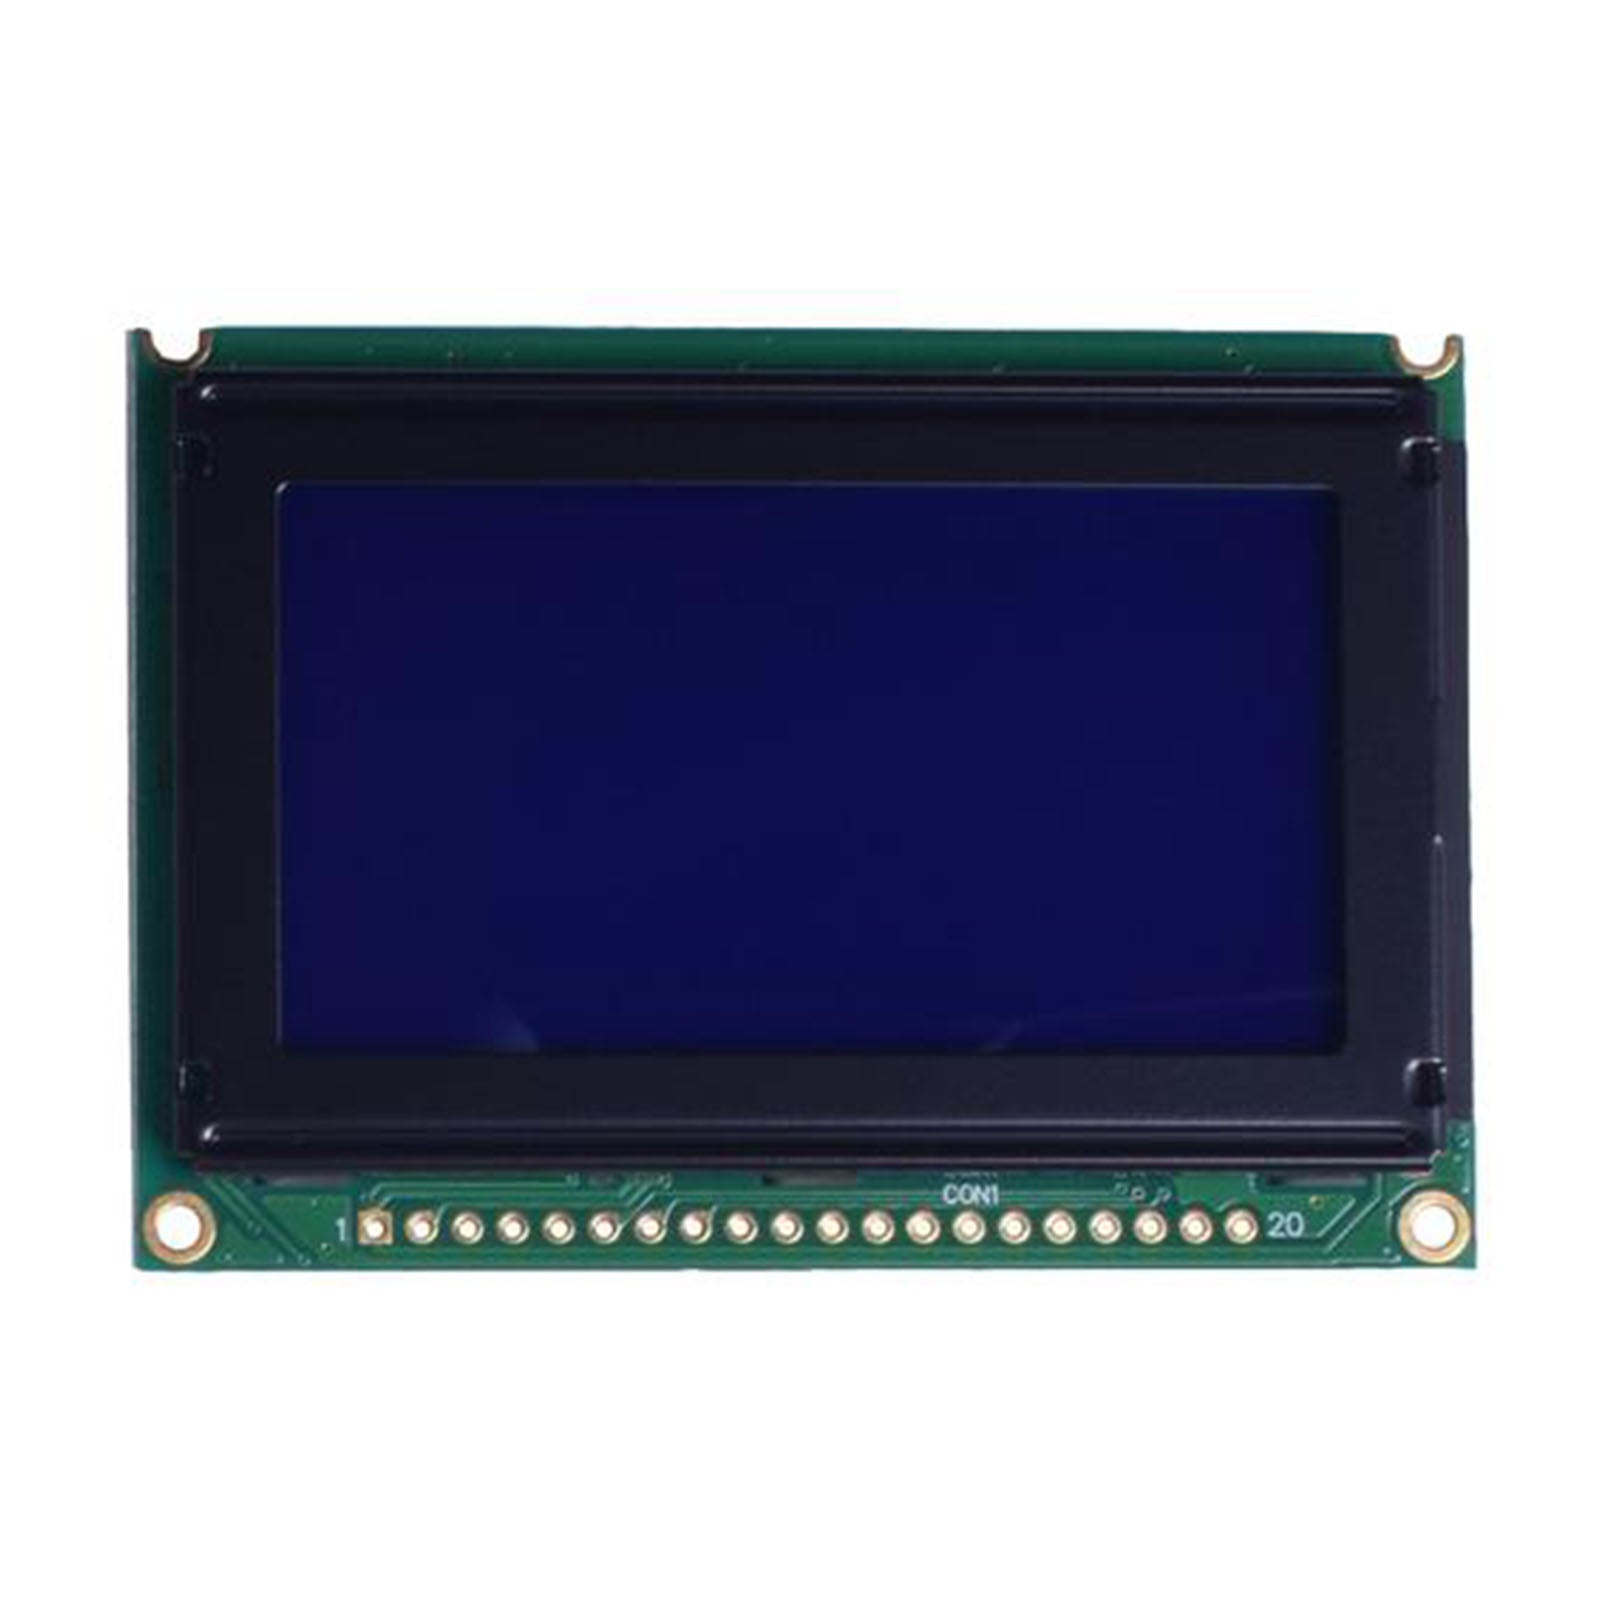 DisplayModule 2.62" 128x64 Slim Graphic LCD - MCU